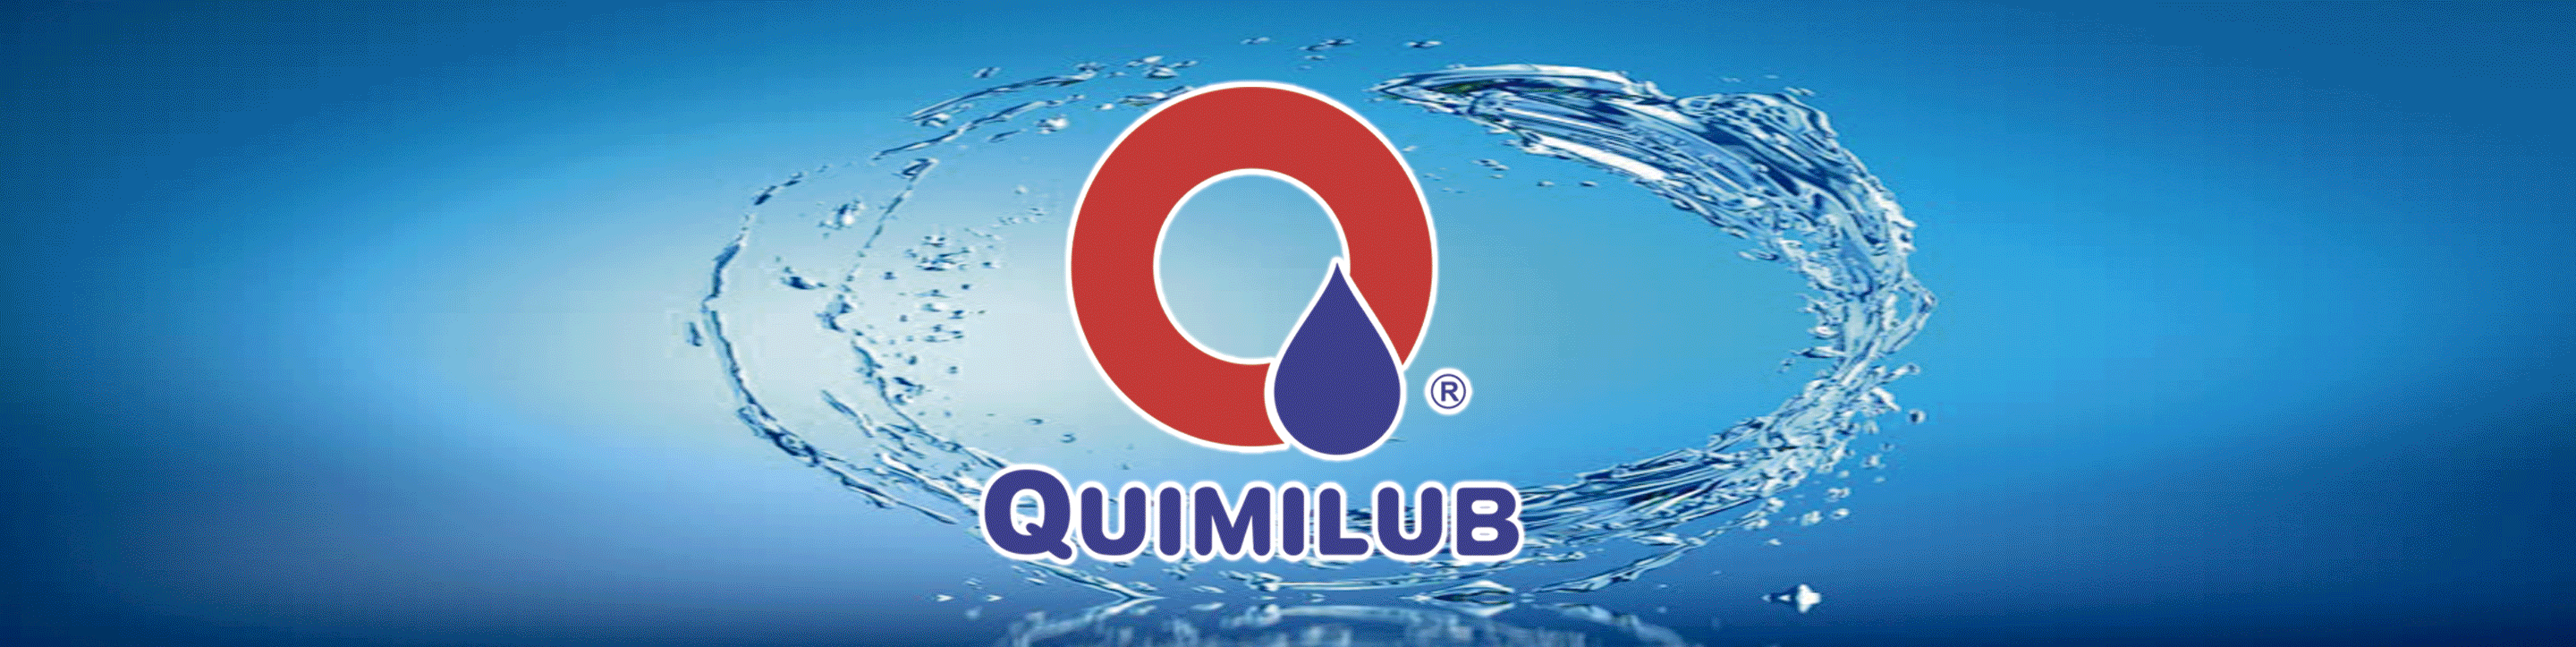 Quimilub